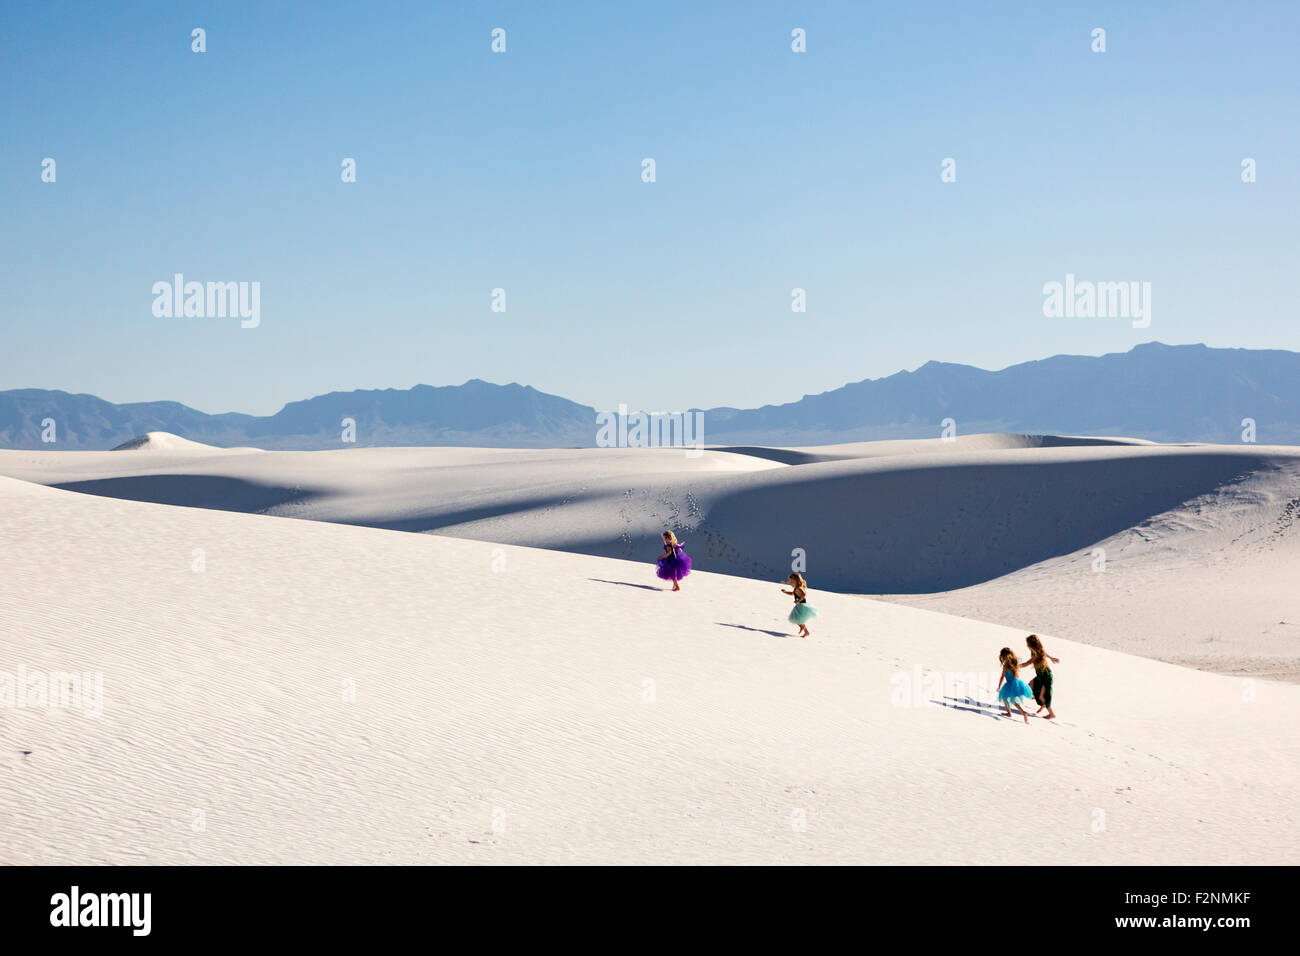 Girls walking on desert sand dunes Stock Photo